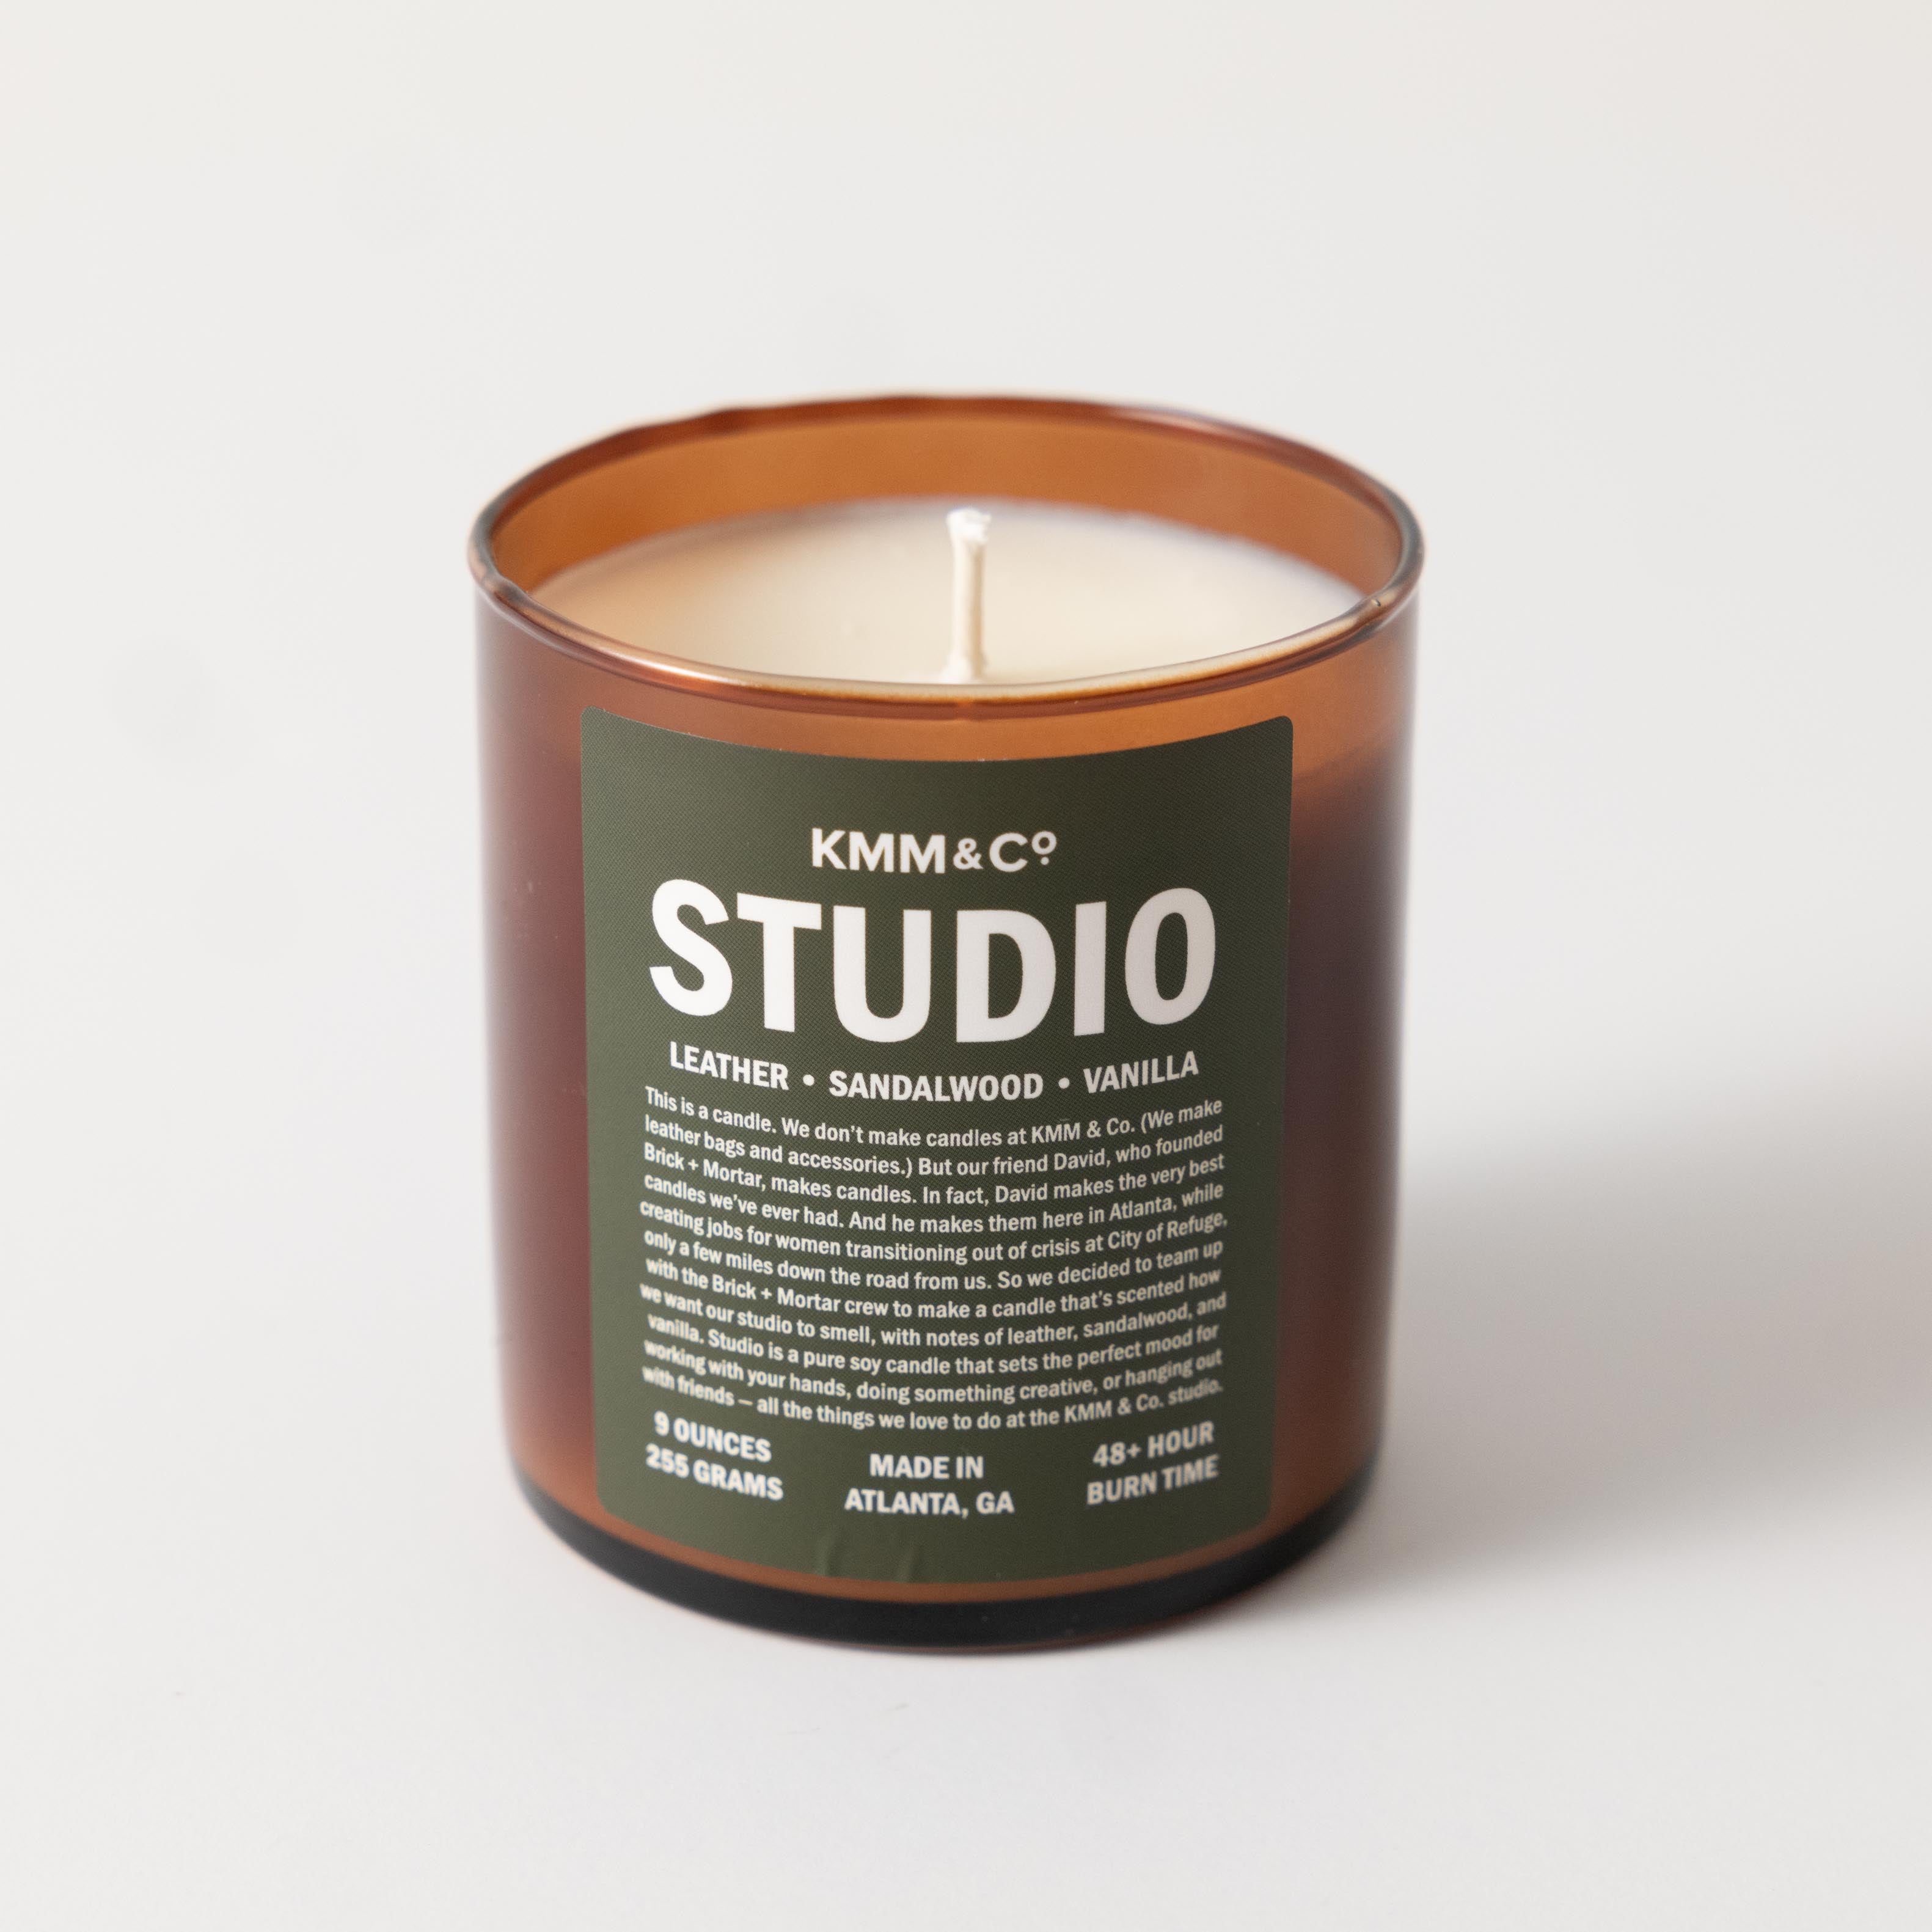 Studio Candle